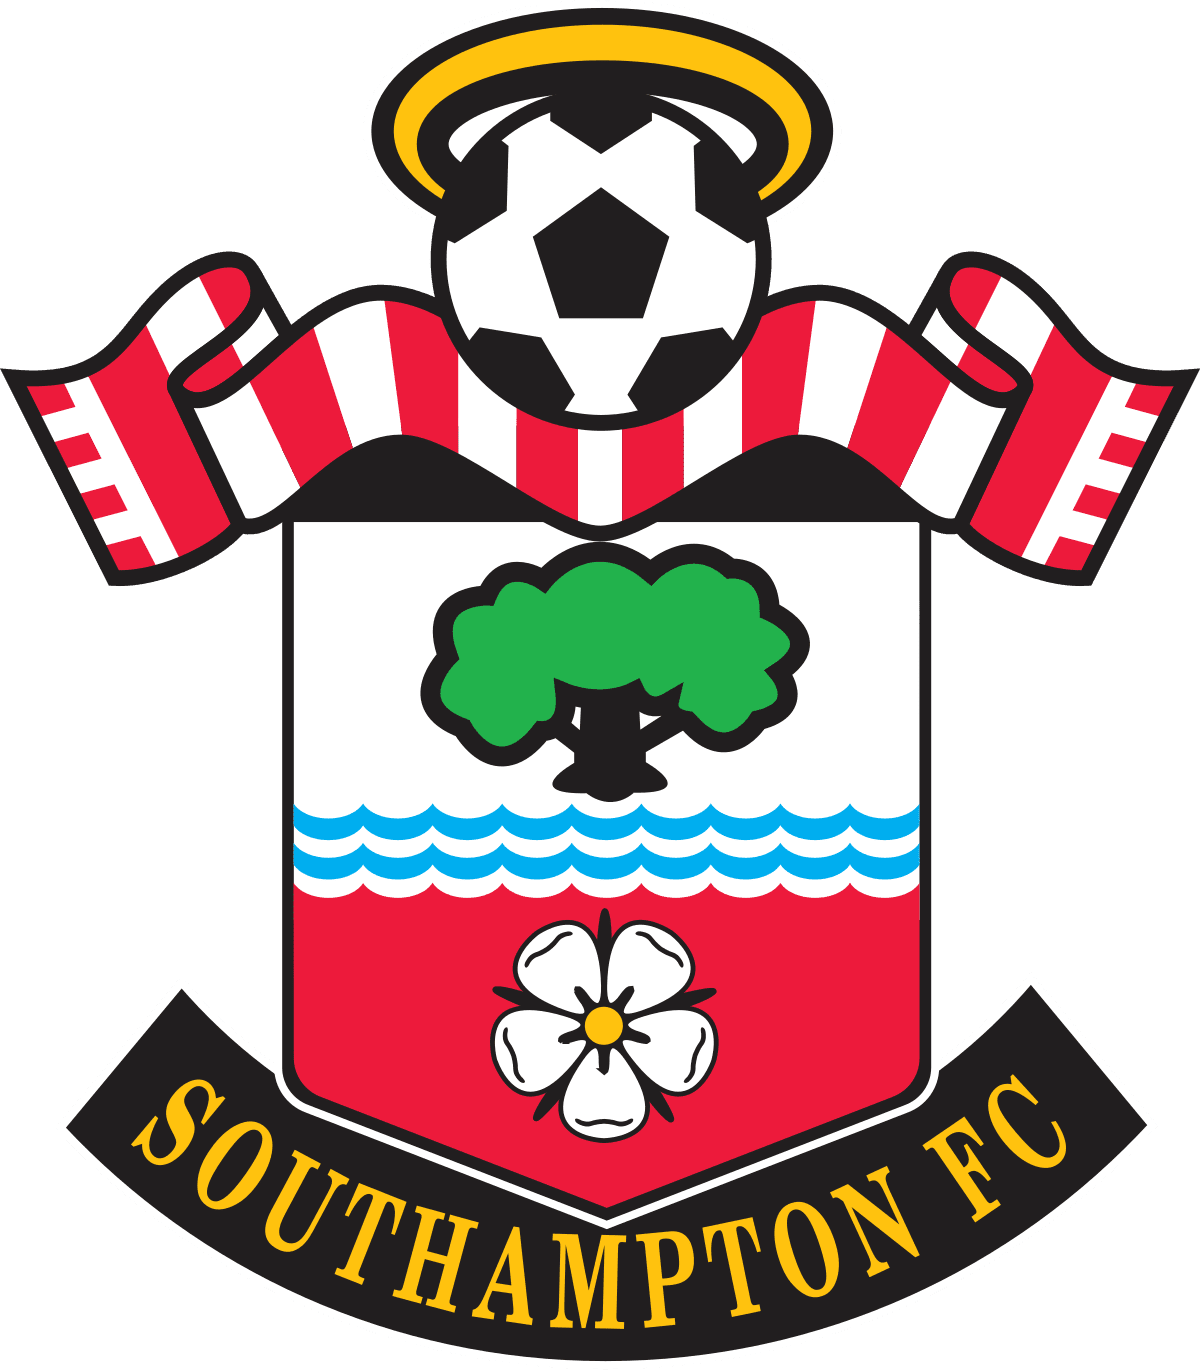 Fotballturer Southampton FC